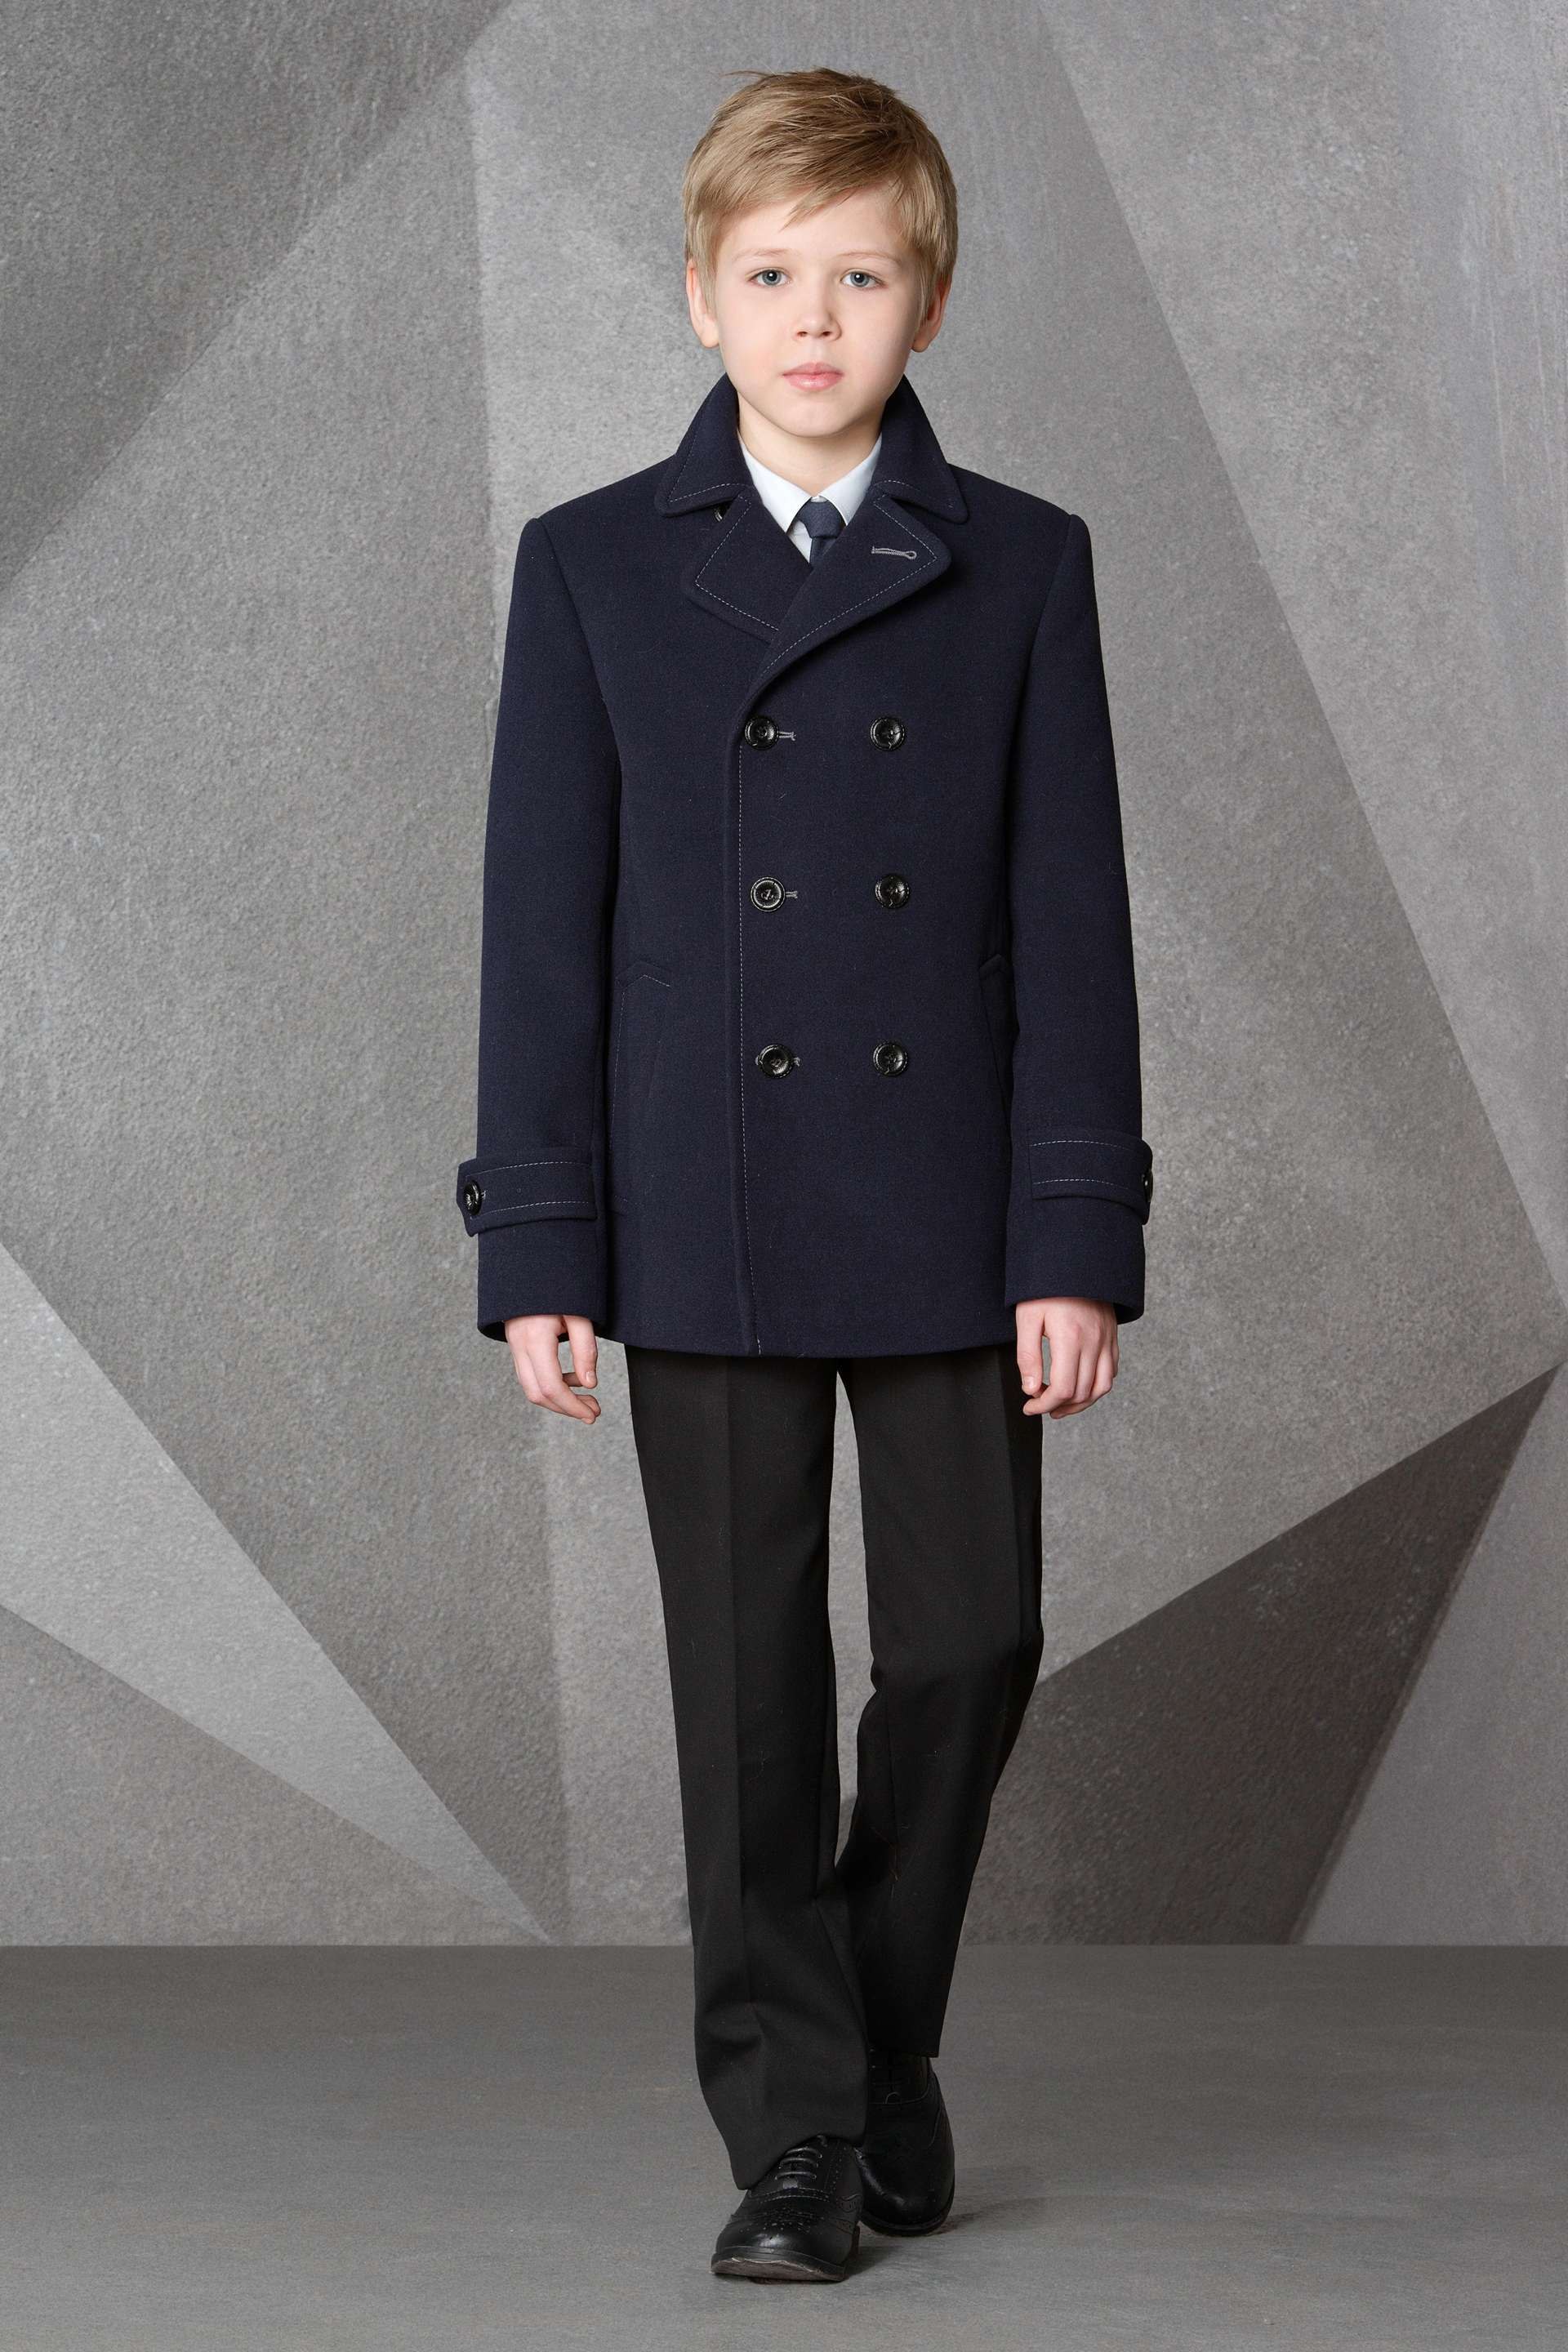 Пальто для подростка мальчика. Пальто Stillini на мальчика. Пальто Stillini пальто синее. Полупальто для мальчика.